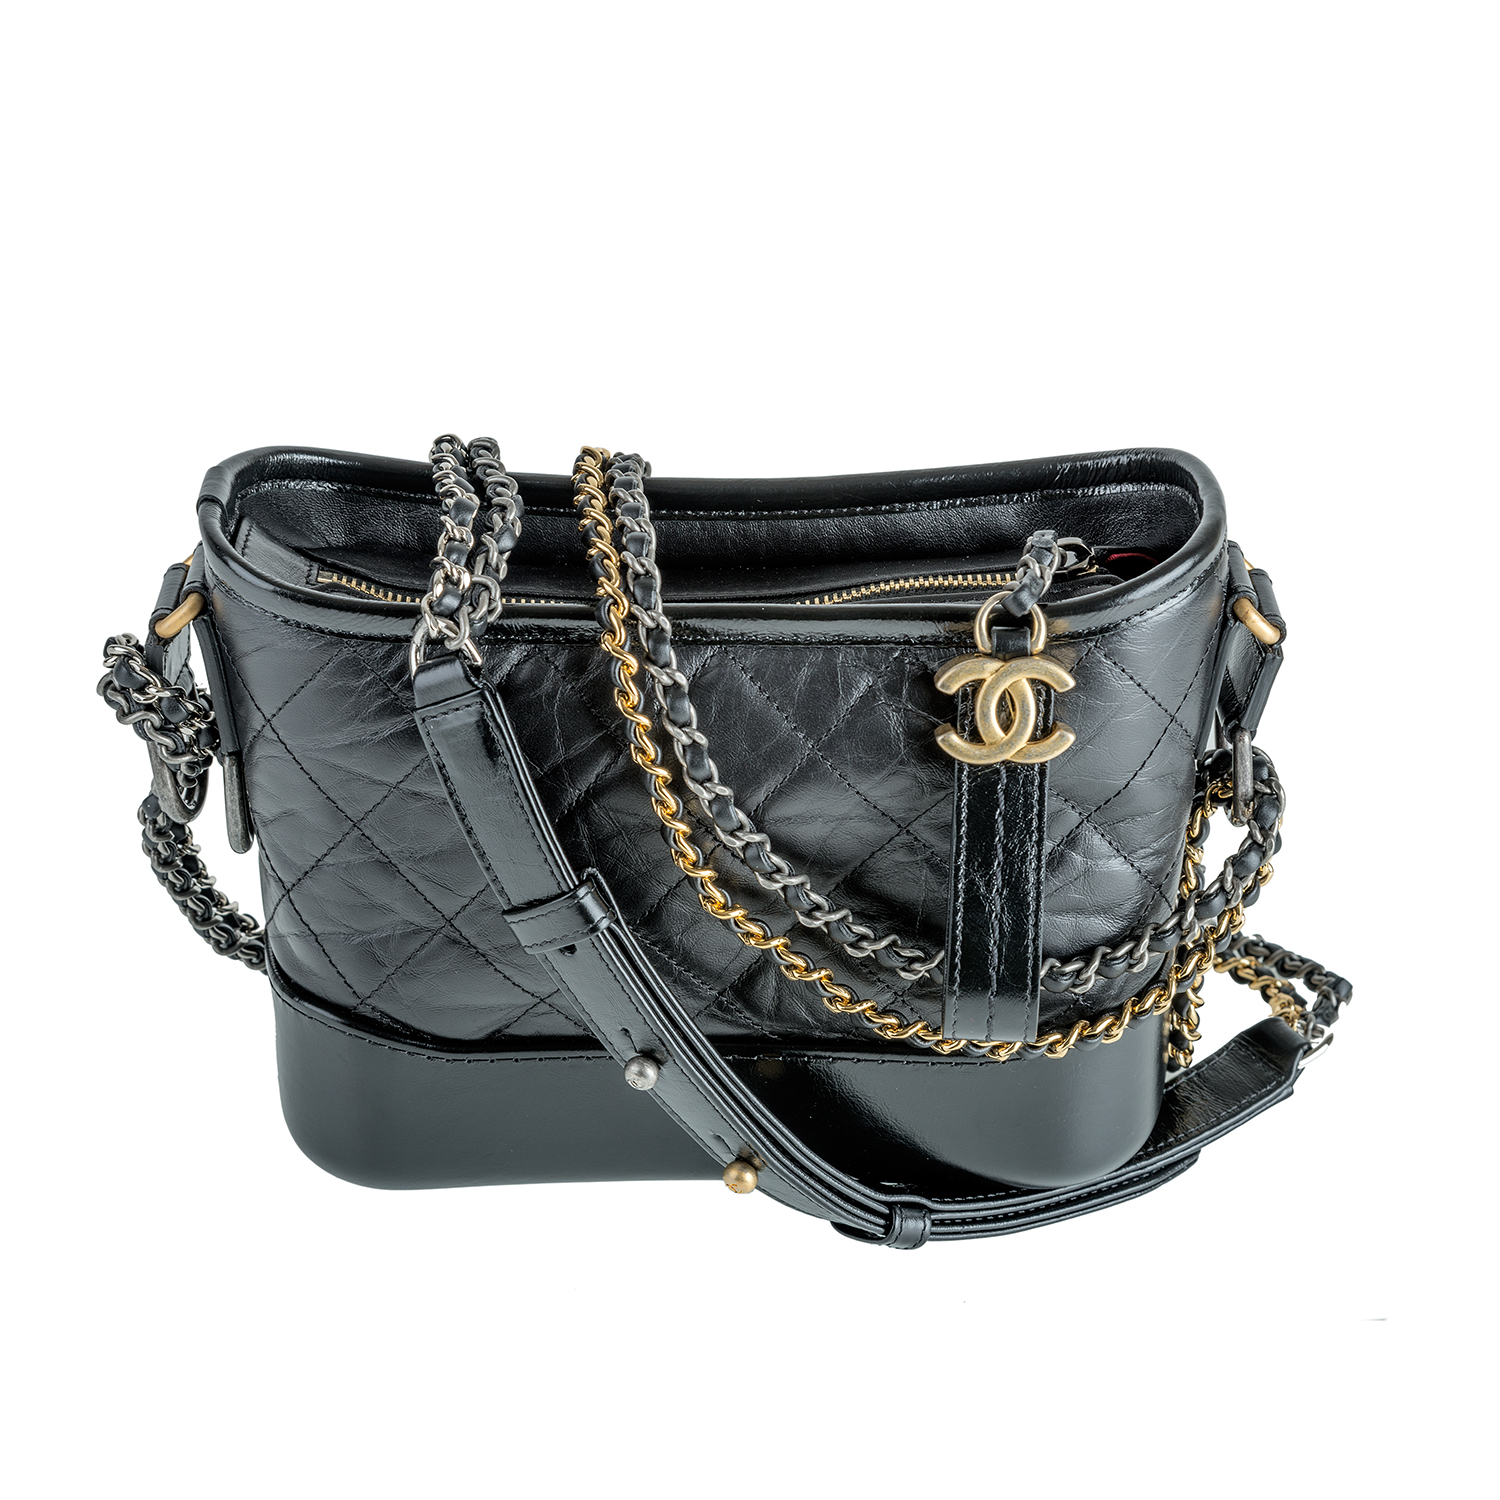 Handbag for rent Chanel - on Rent Fashion Bag